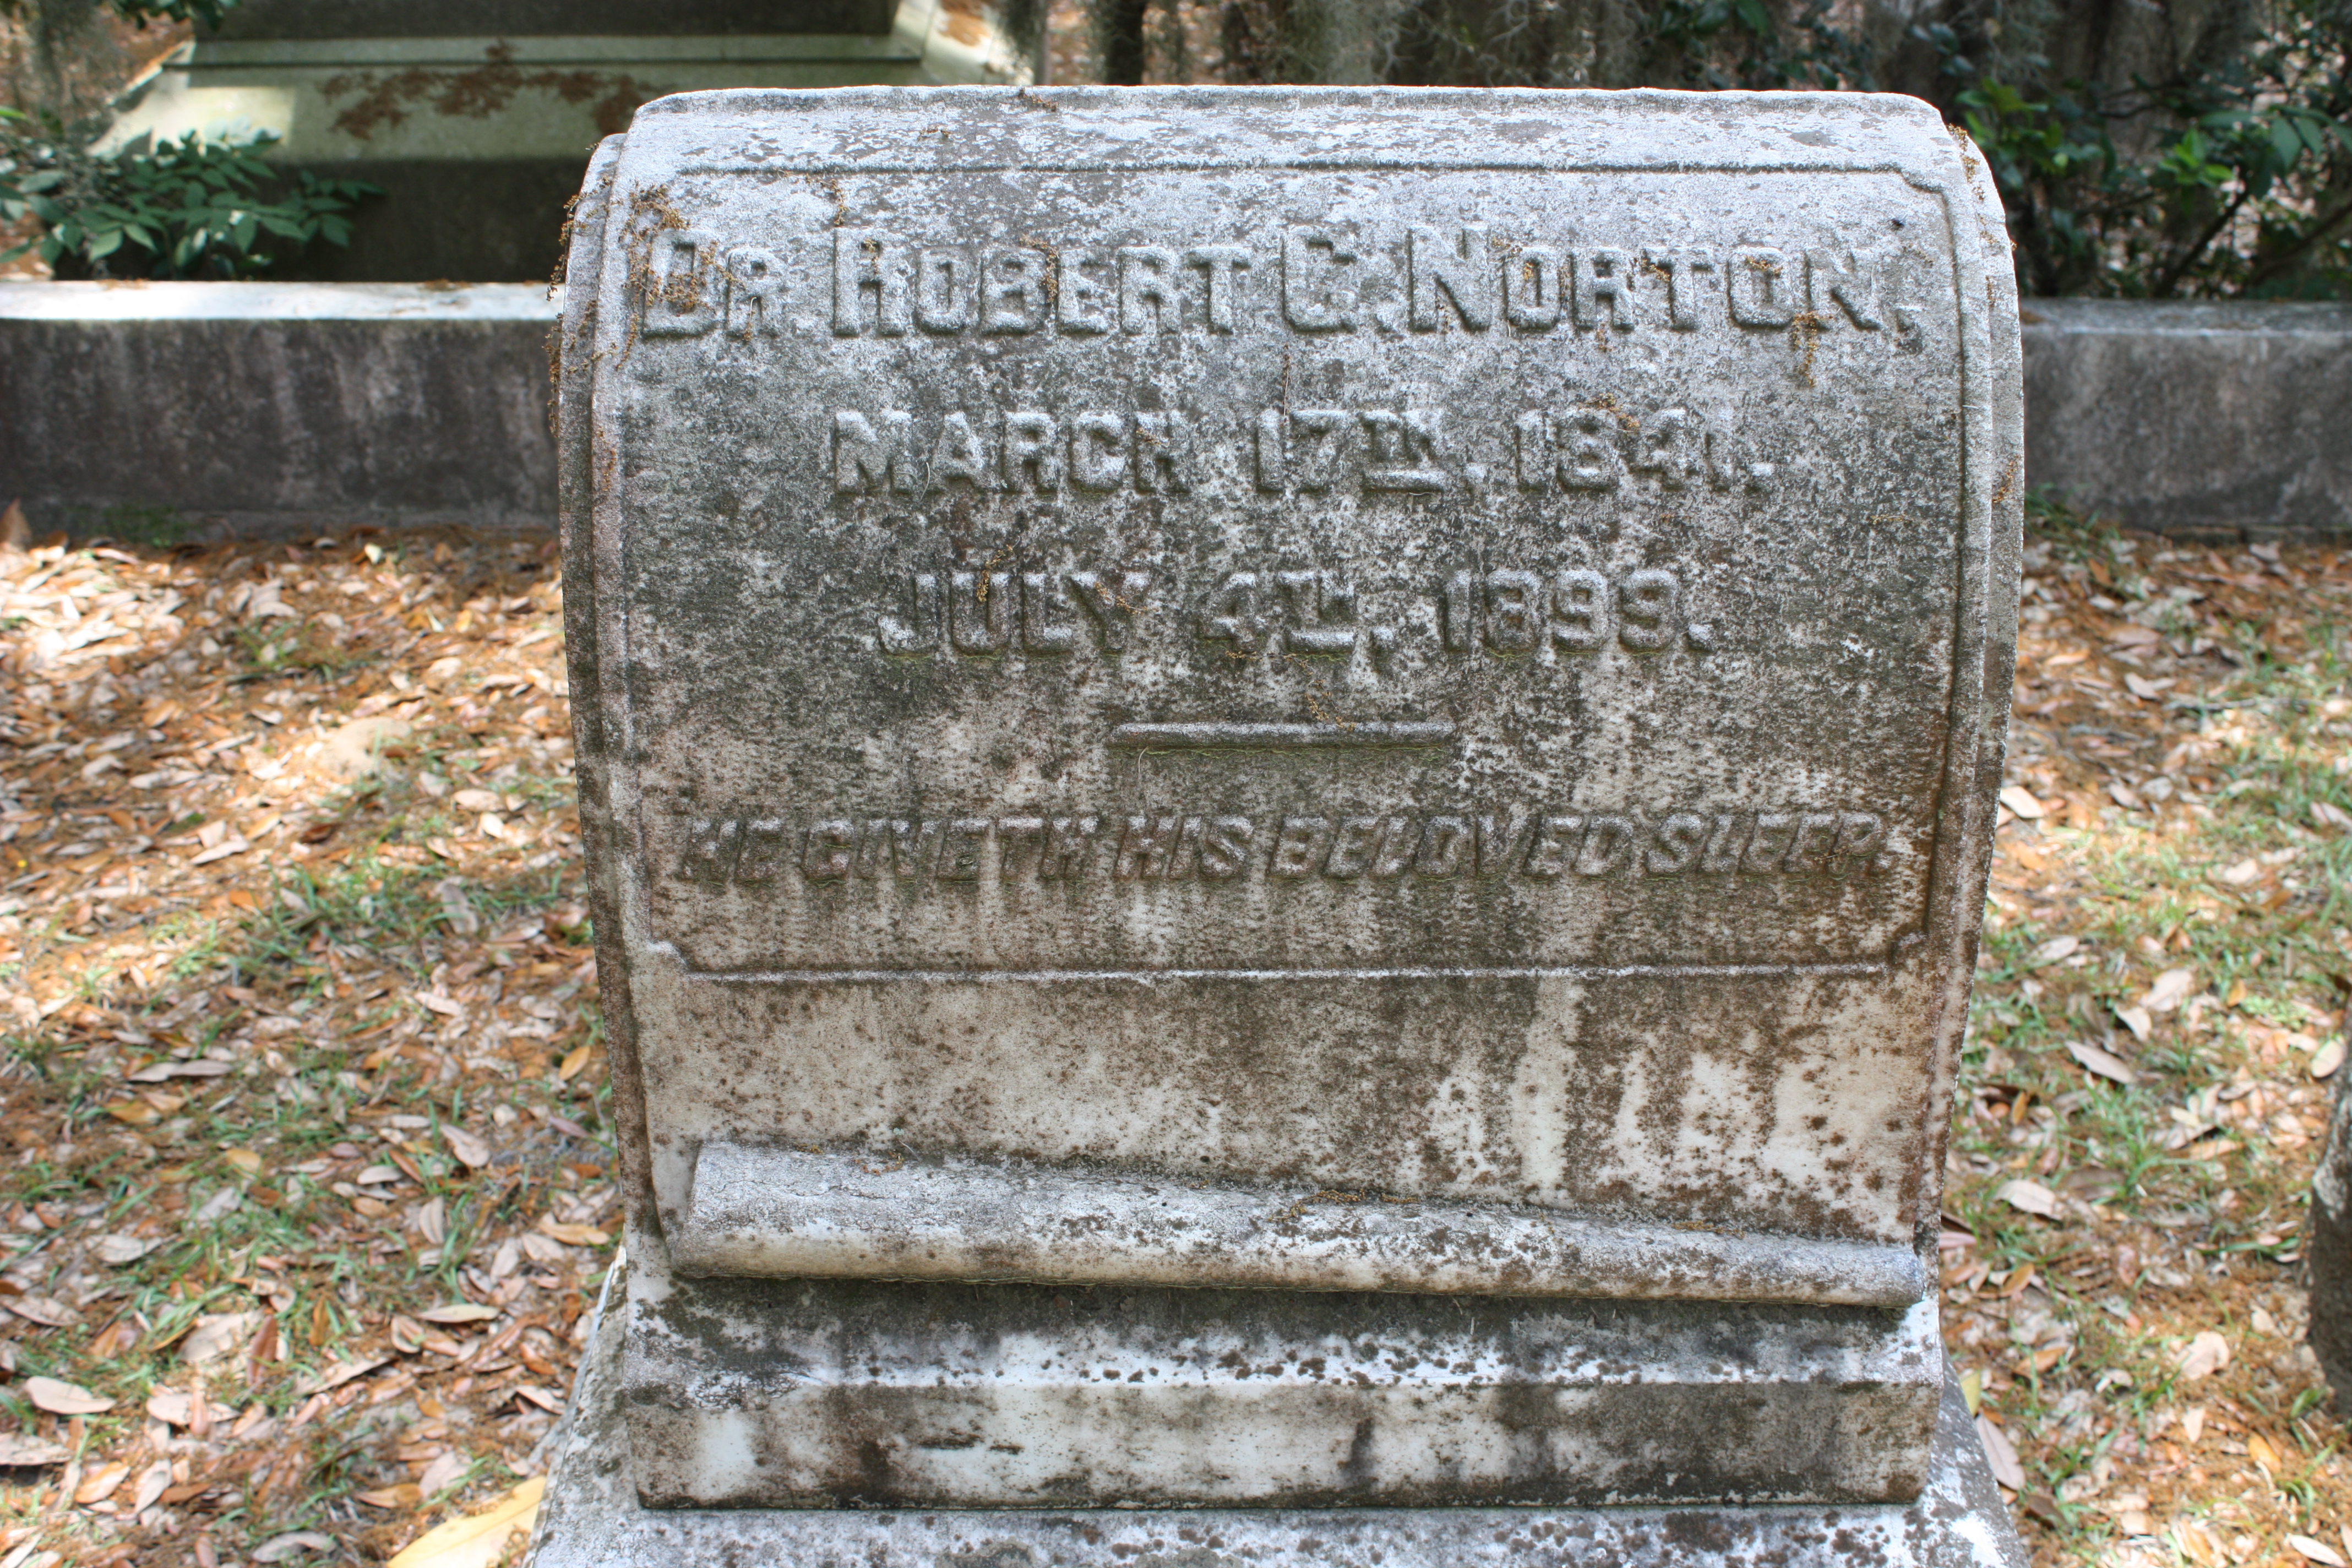 Grave of Robert Godfrey Norton in the Bonaventure cemetery.